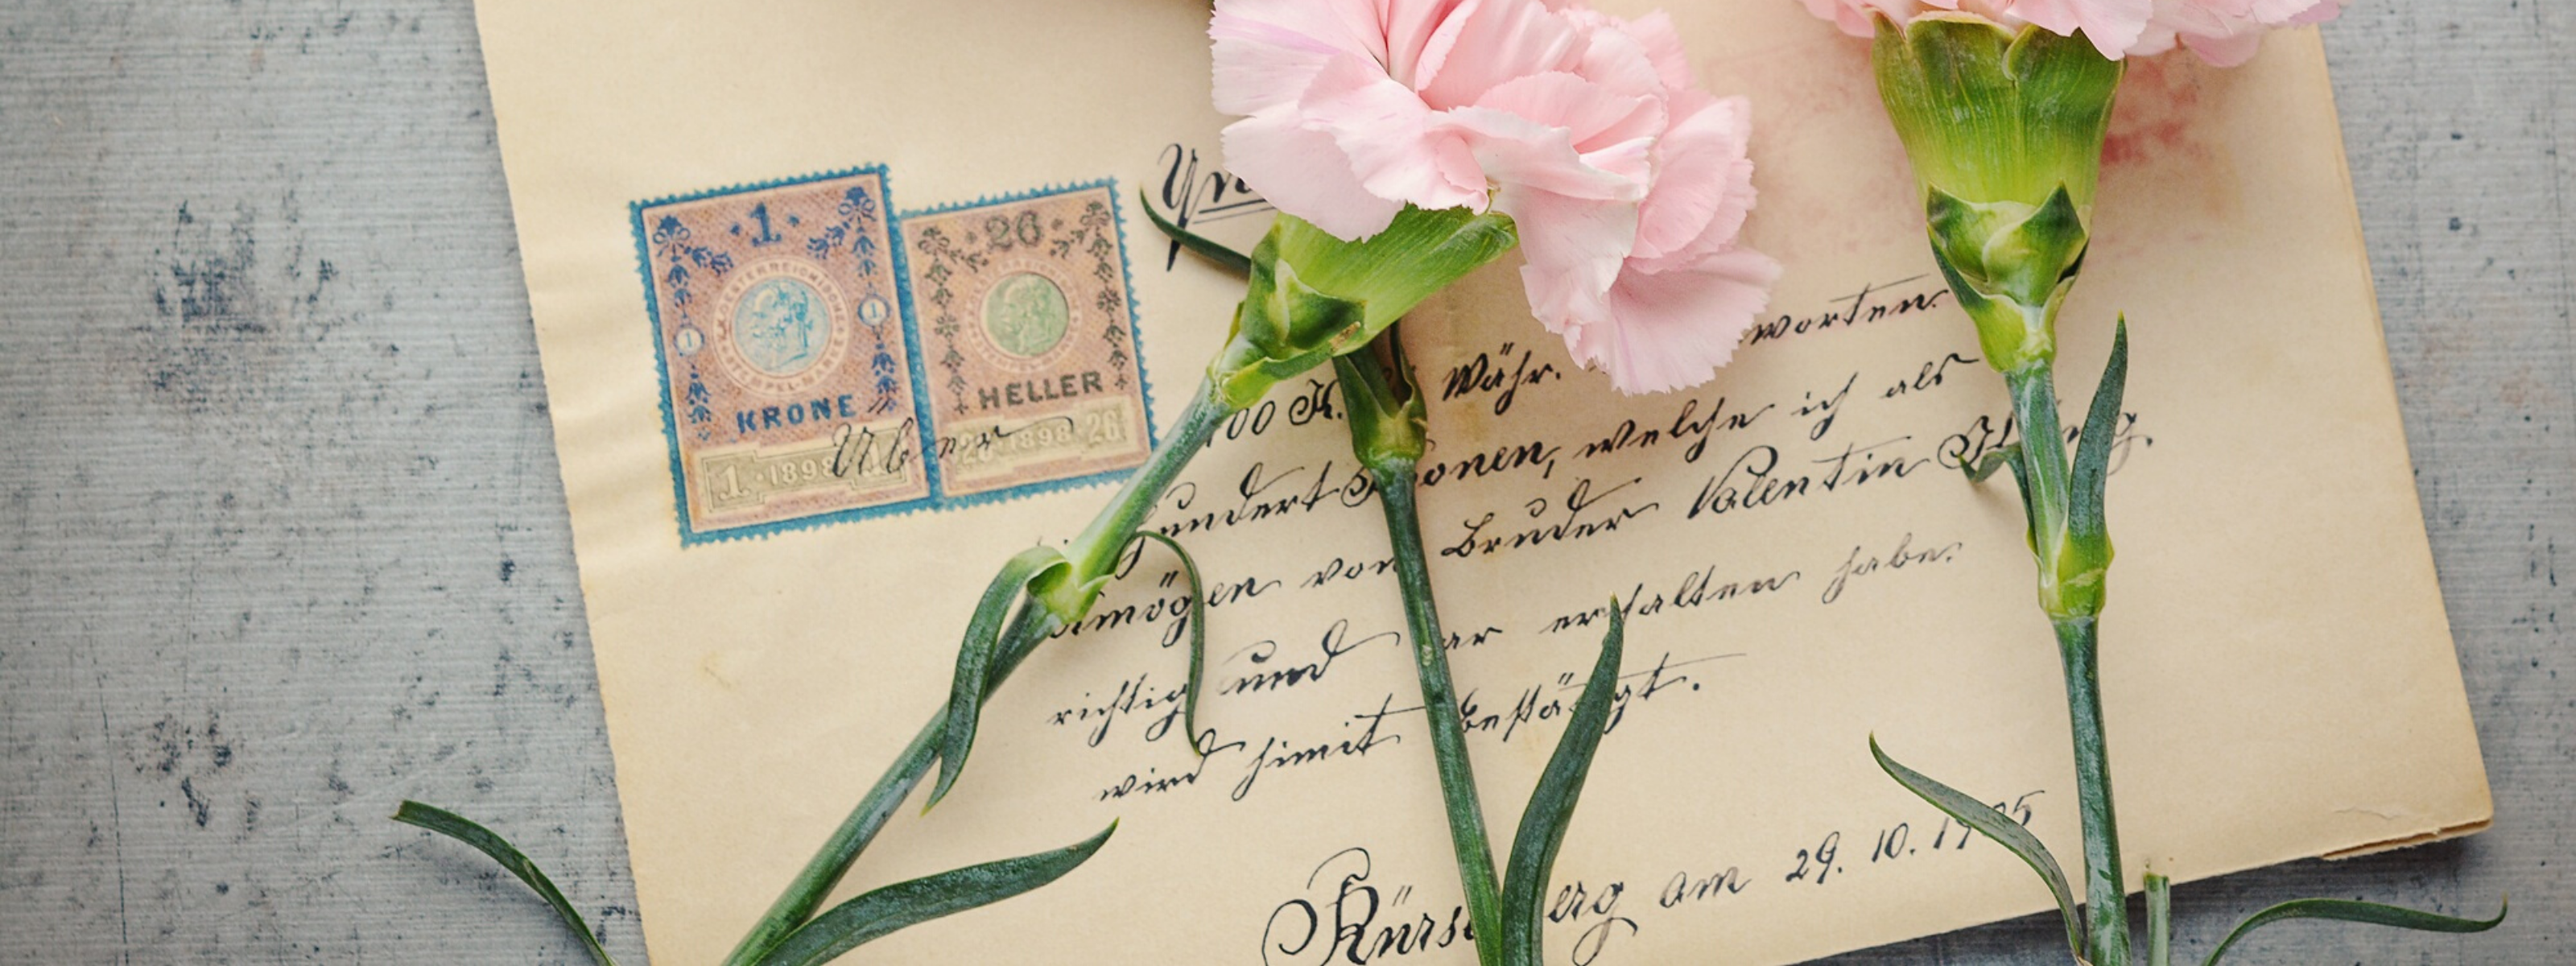 Różowe kwiaty z zielonymi liścmi na tle zaadresowanej koperty ze znaczkami.